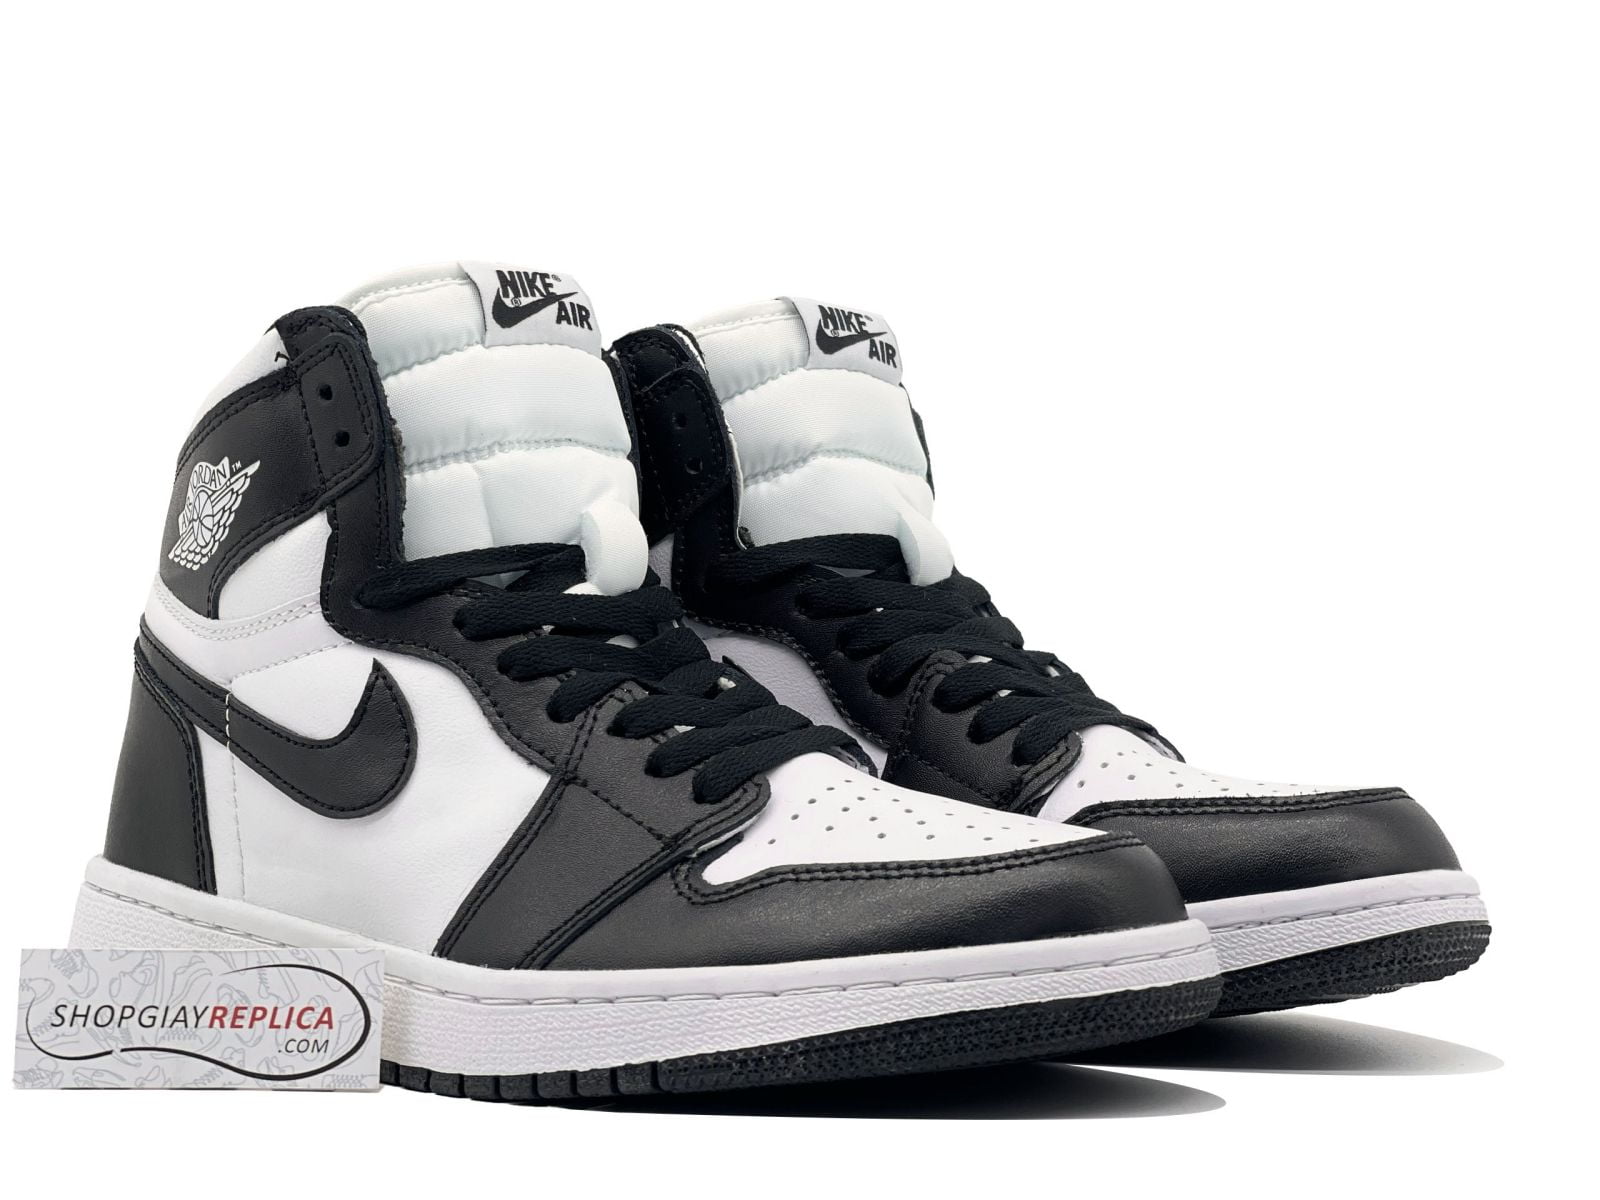 Giày Nike Air Jordan 1 High Black White Rep 1:1 - Shop giày Replica